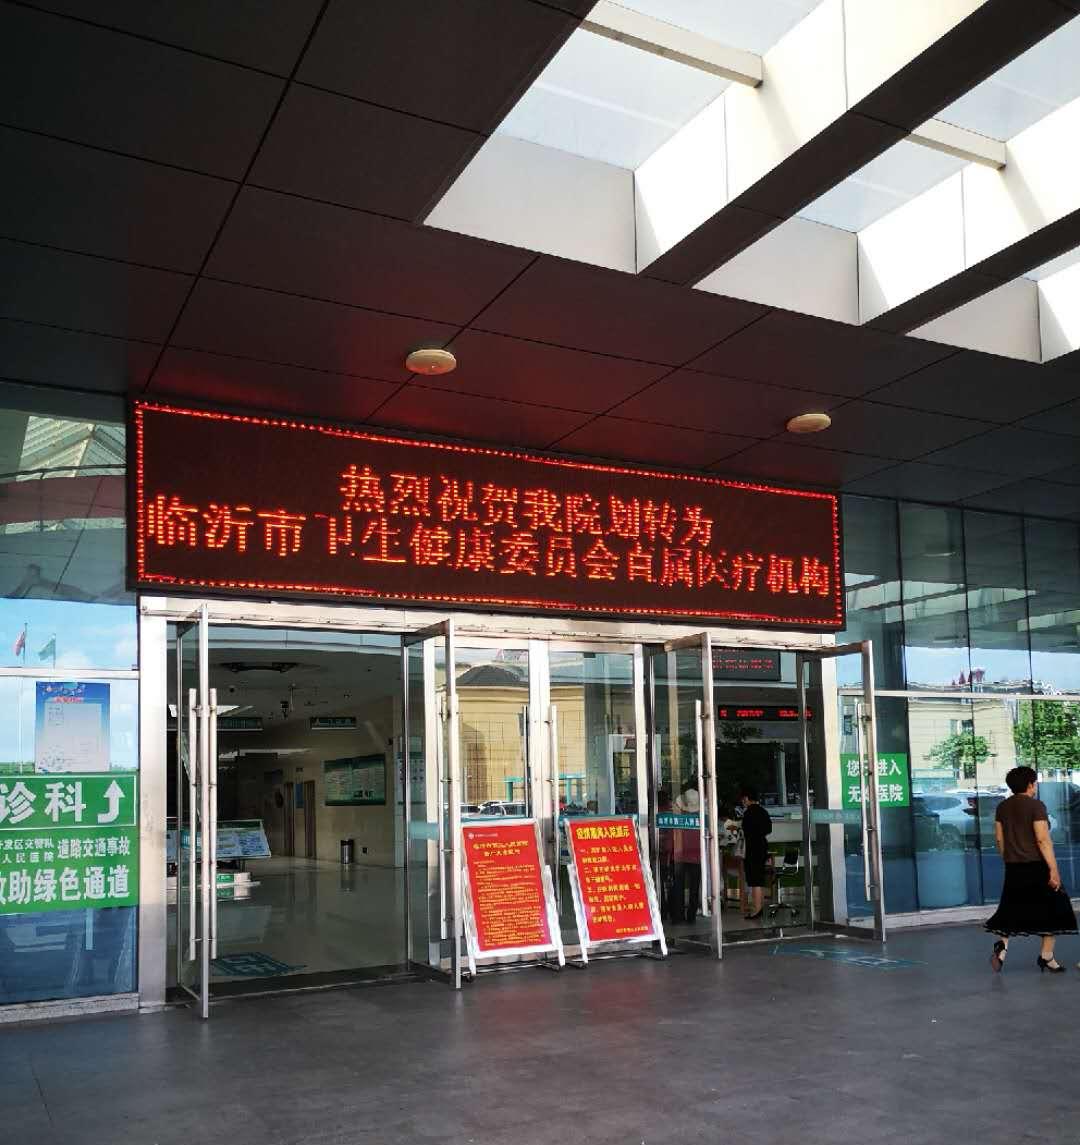 临沂市第三人民医院召开第一届学科发展论坛